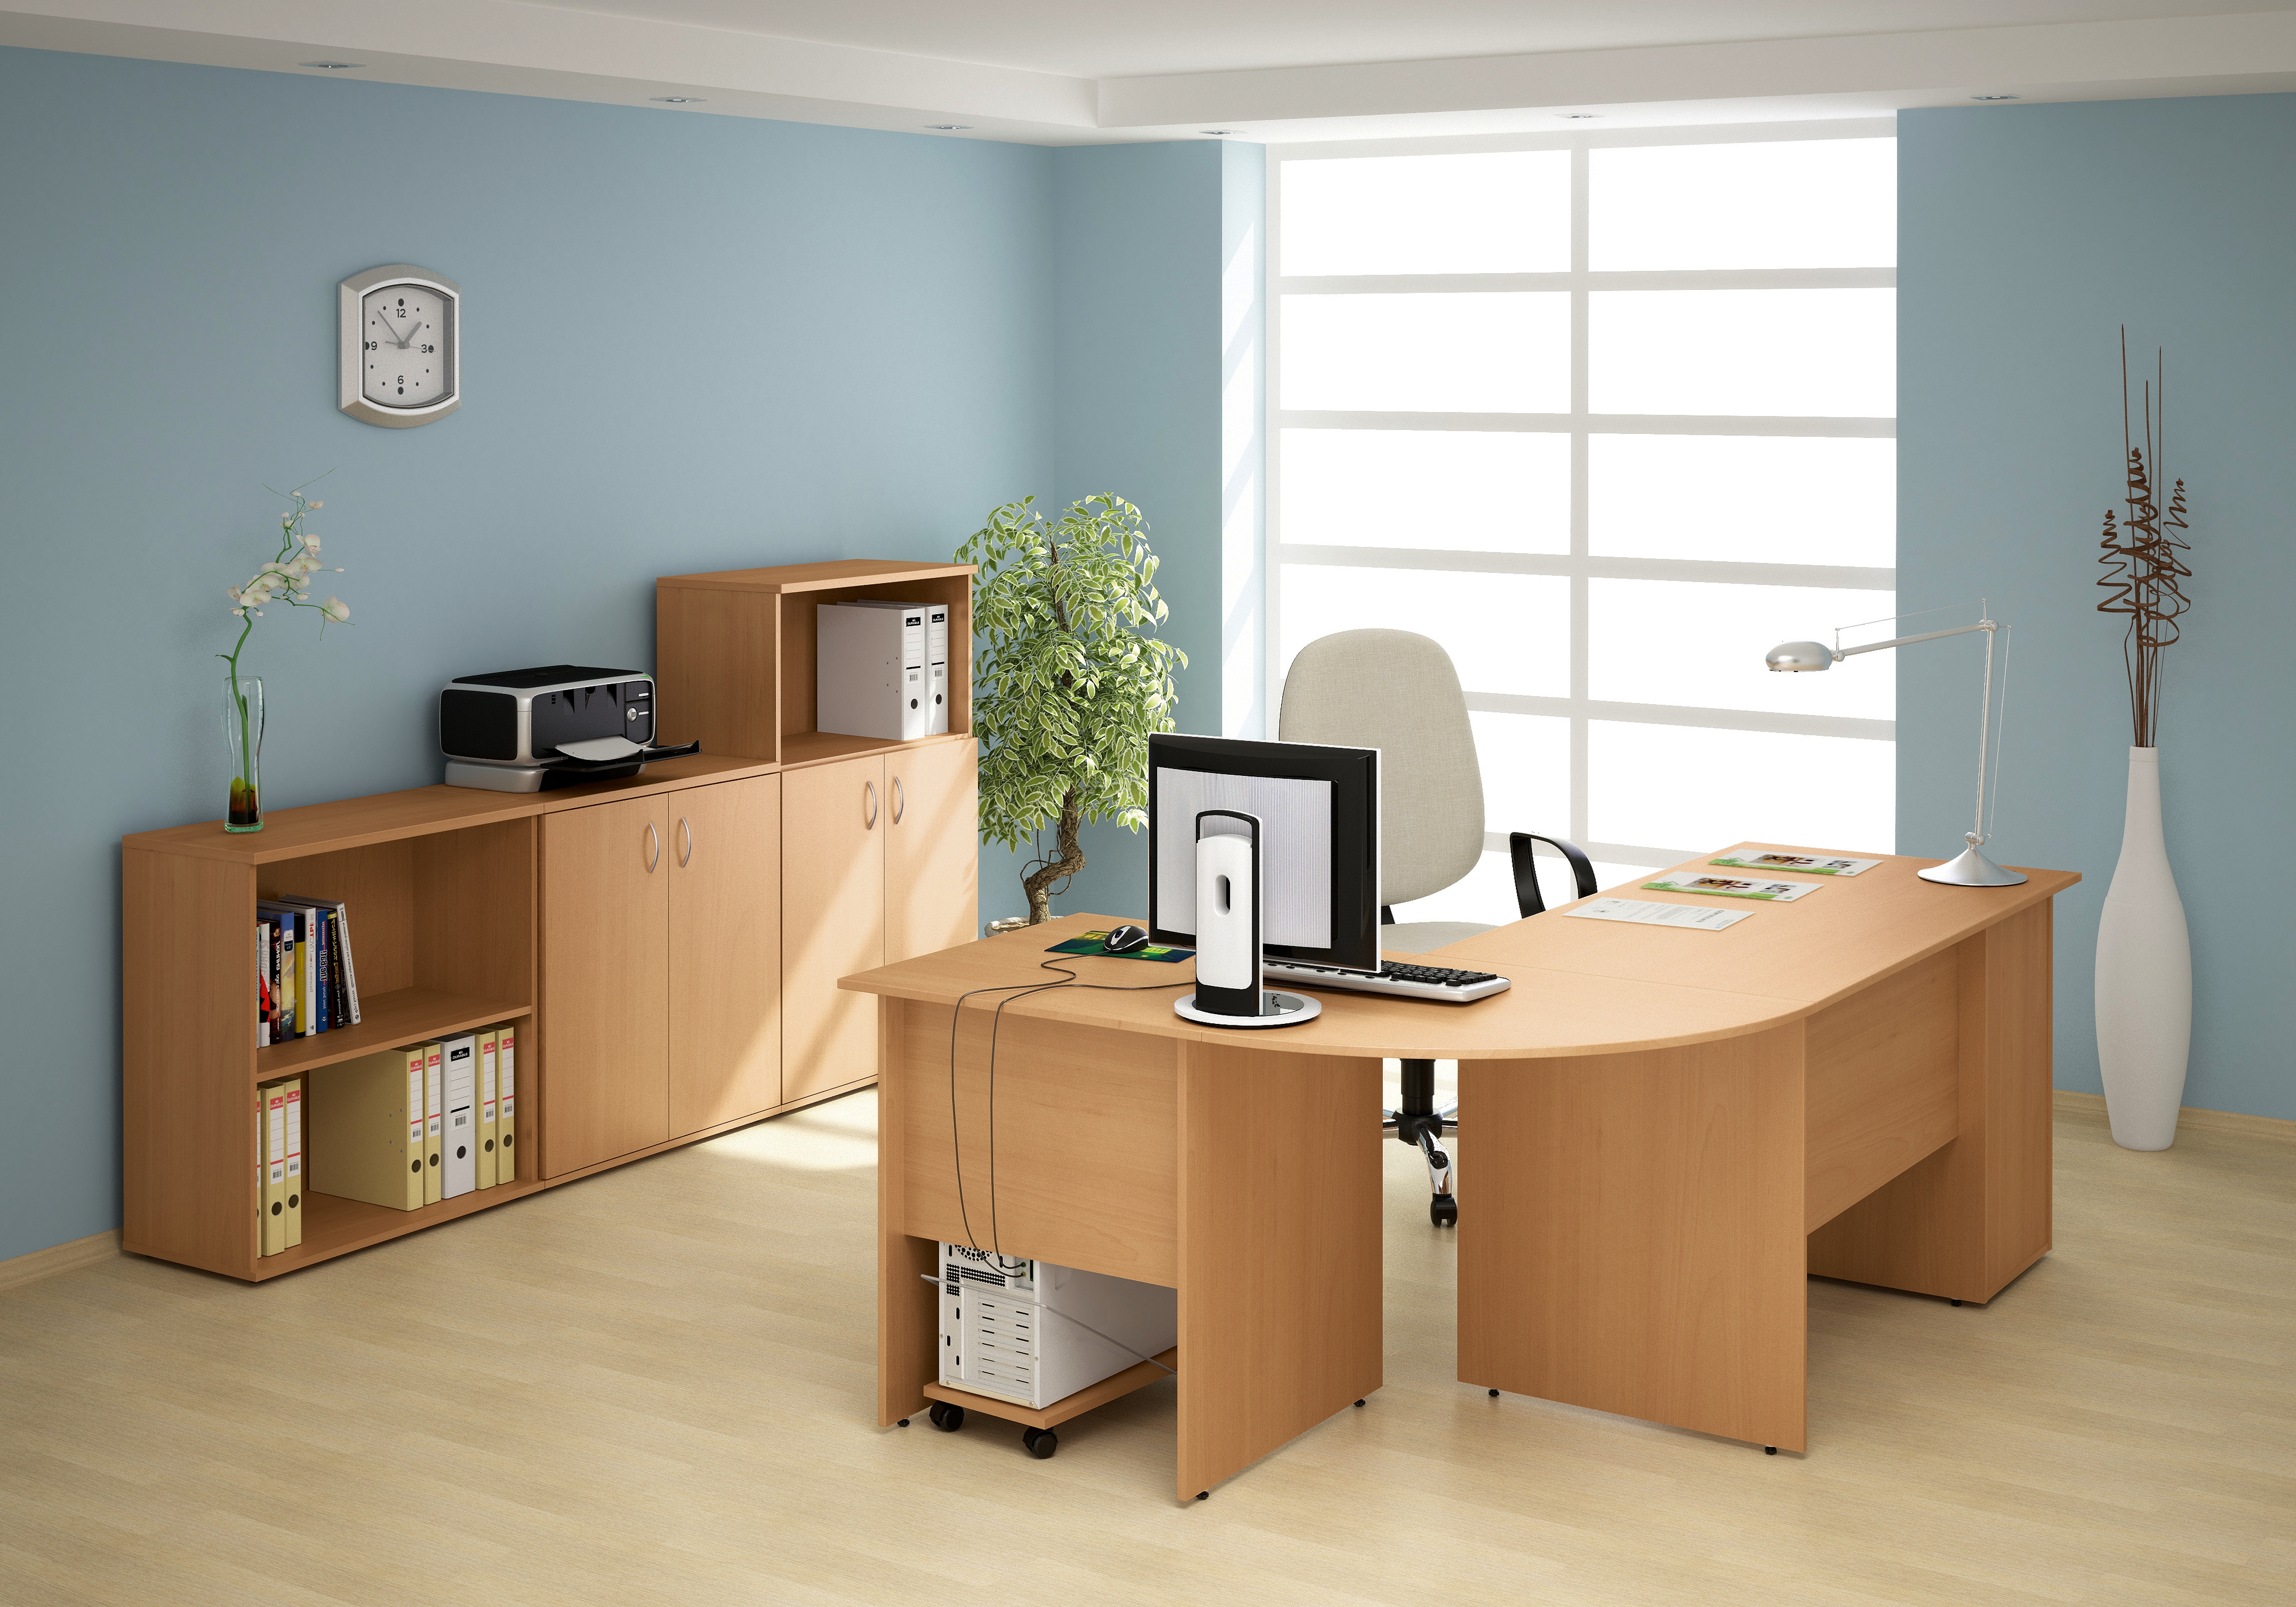 Планировка кабинета в офисе: открытая, кабинетная или смешанная. Какой вид планировки выбрать? — компания «PRAGMATIKA»